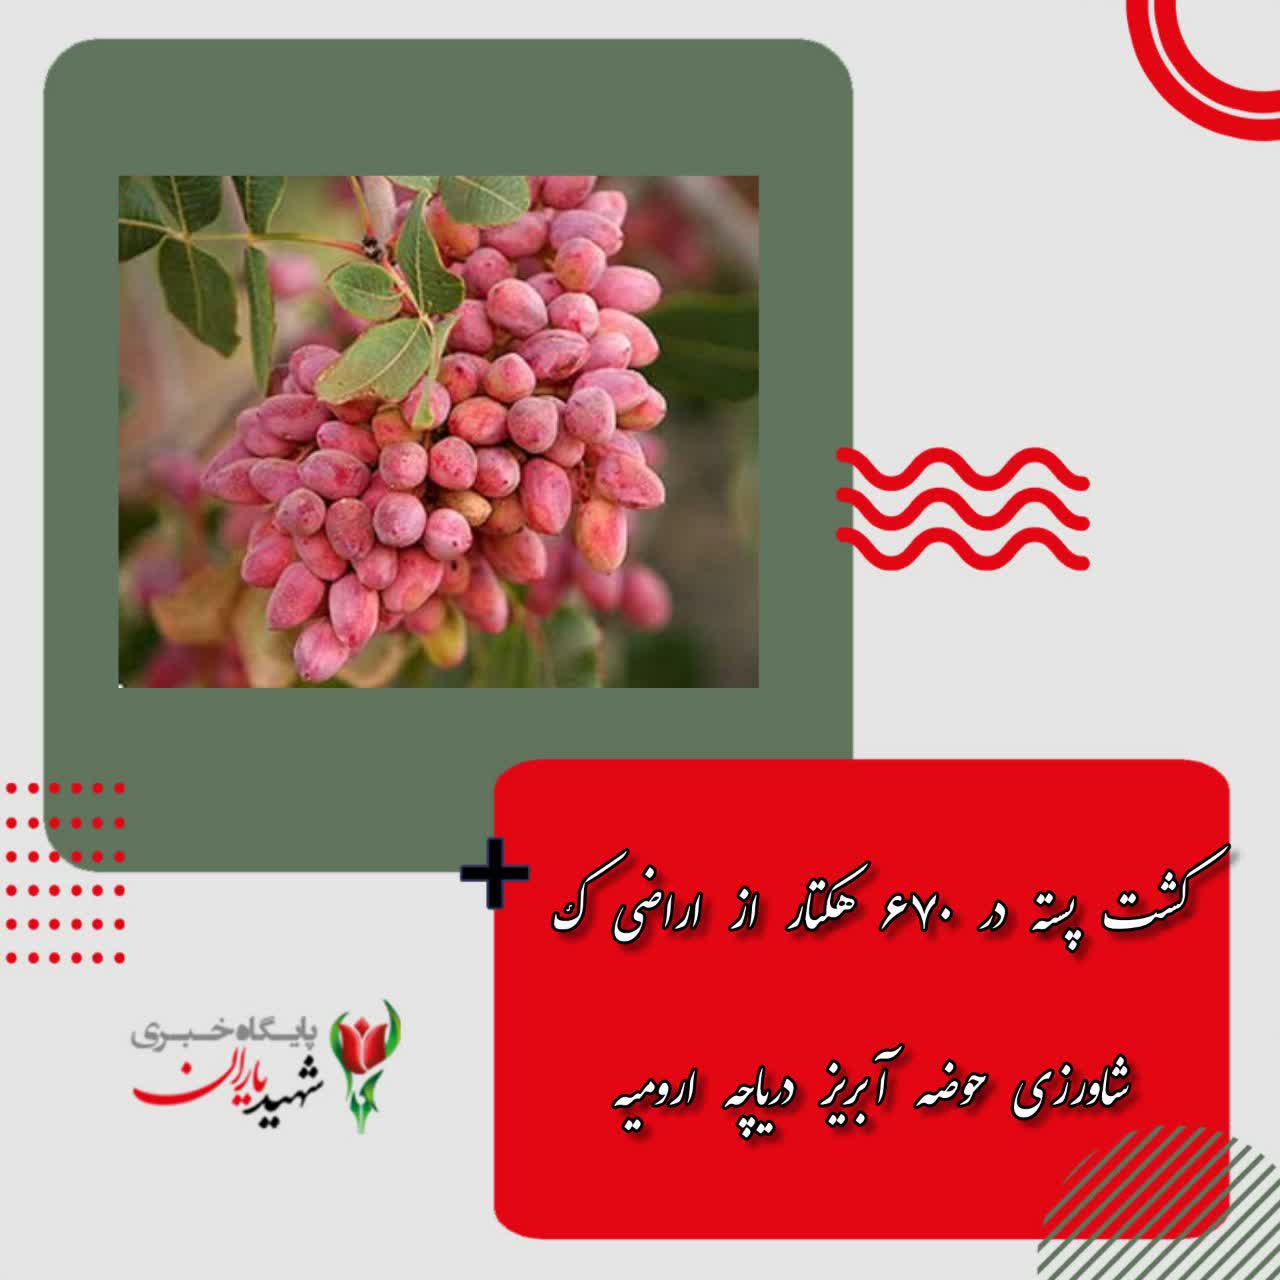 سرپرست معاونت بهبود تولیدات گیاهی سازمان جهاد کشاورزی استان اعلام کرد